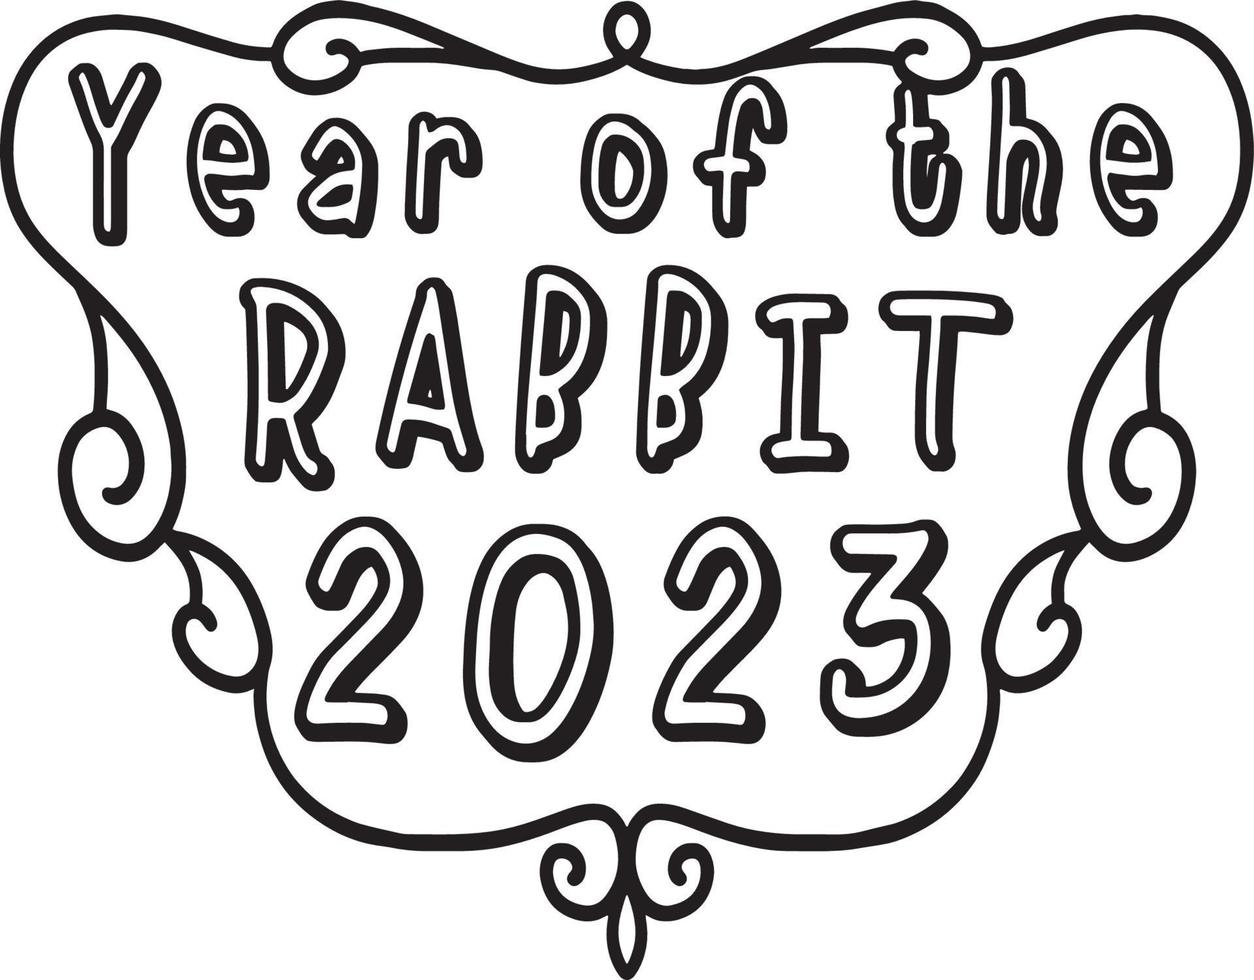 desenho de ano de coelho 2023 isolado para colorir vetor